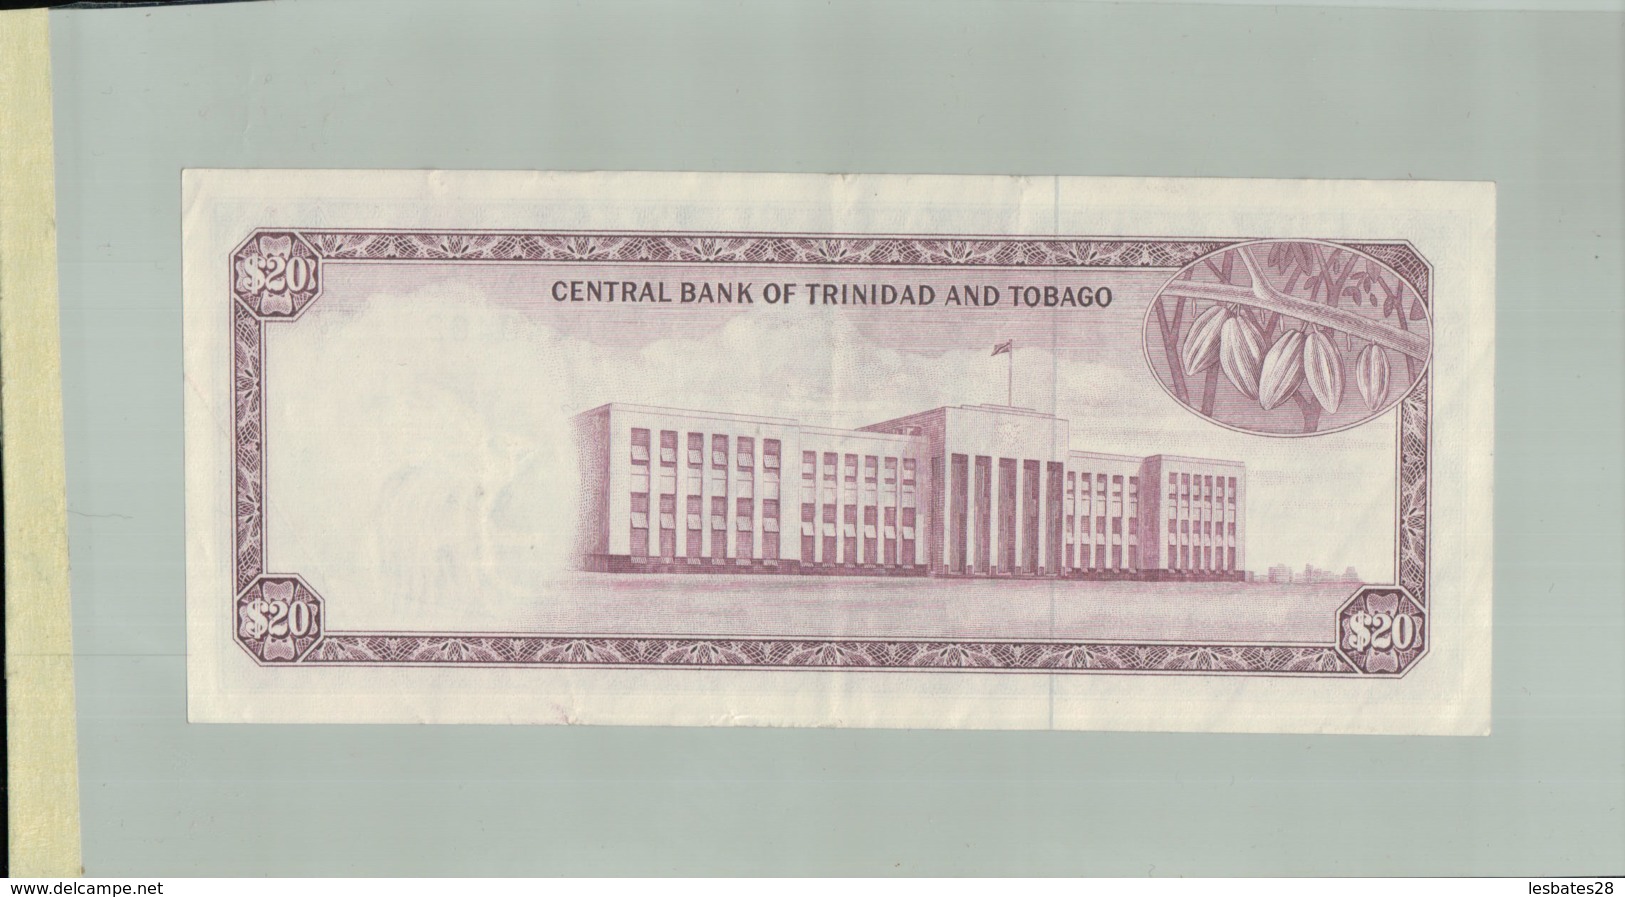 Billet De Banque Central Bank Of Trinidad And Tobago - 20 Dollars 1964   DEC 2019 Gerar - Trinité & Tobago